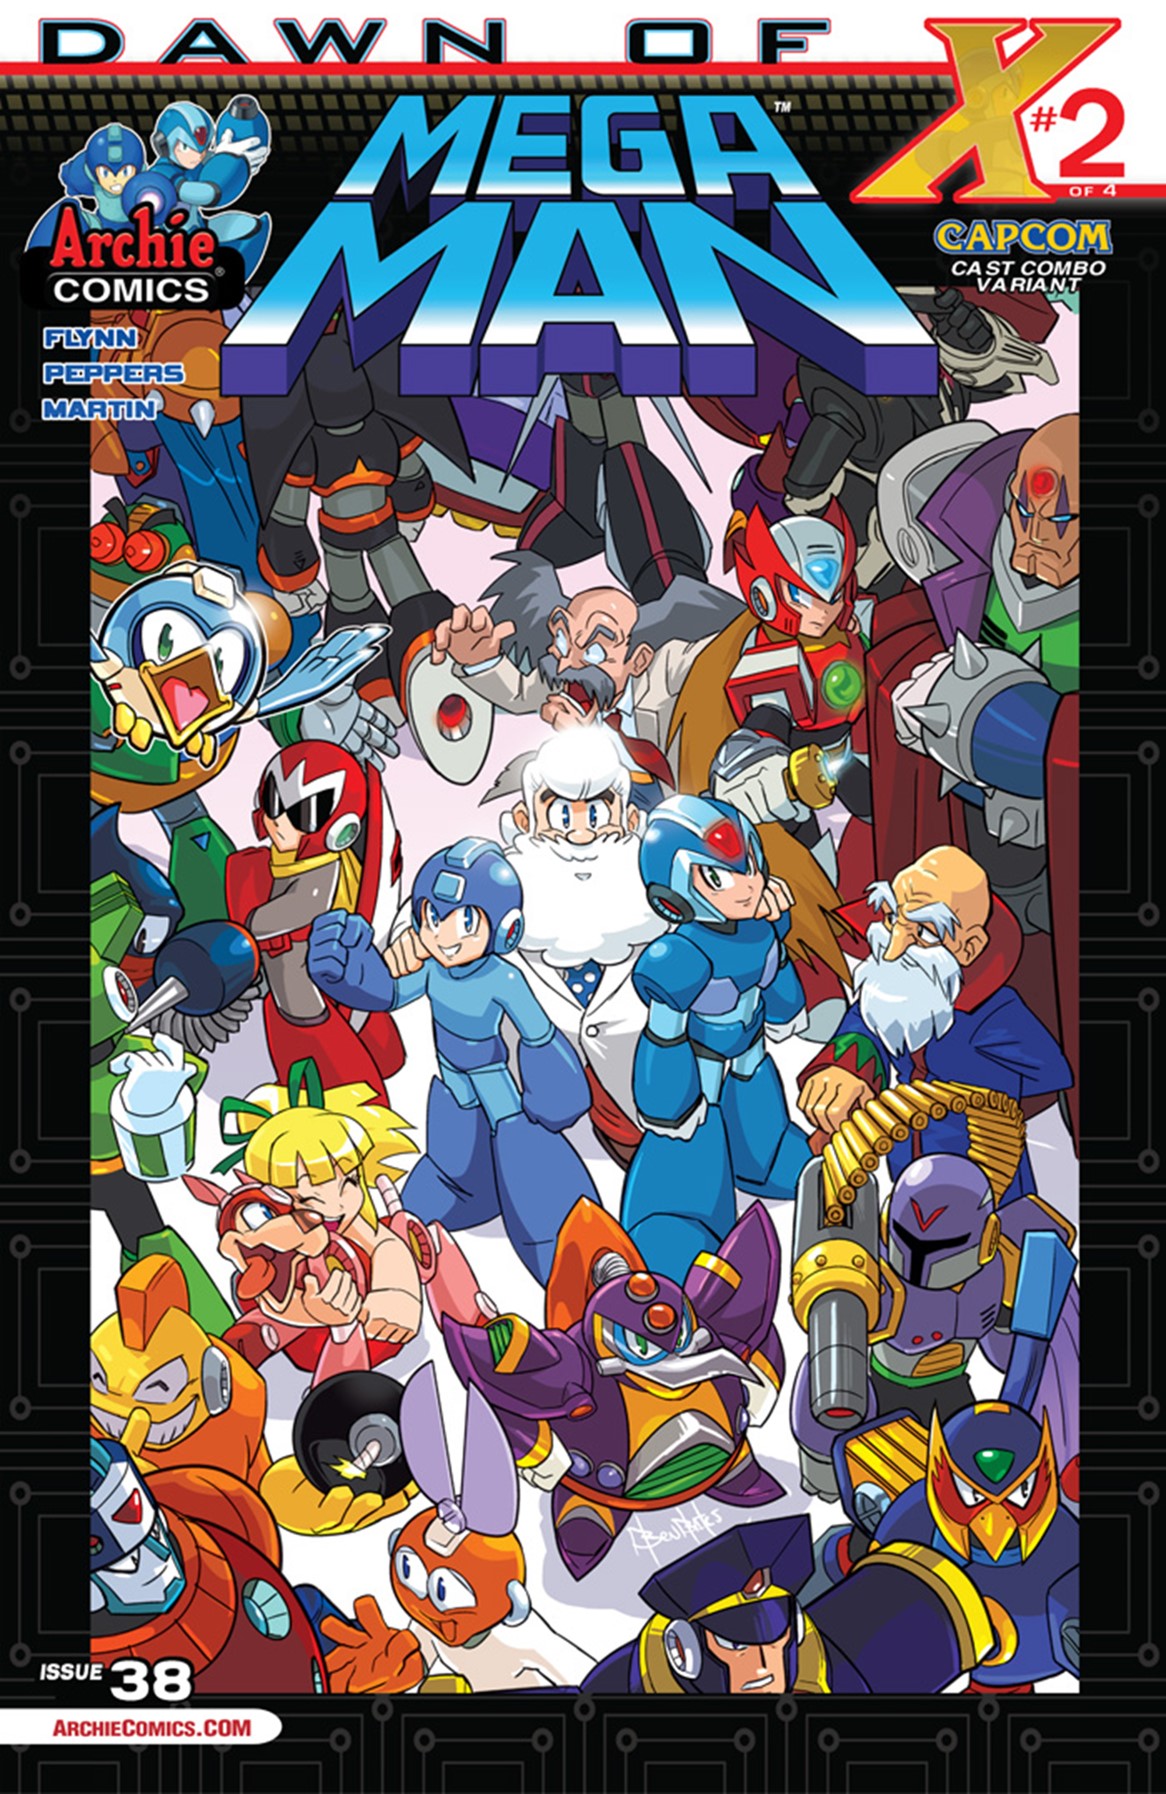 Mega Man Issue 38 Archie Comics Mmkb The Mega Man Knowledge Base Mega Man 10 Mega Man X 7993